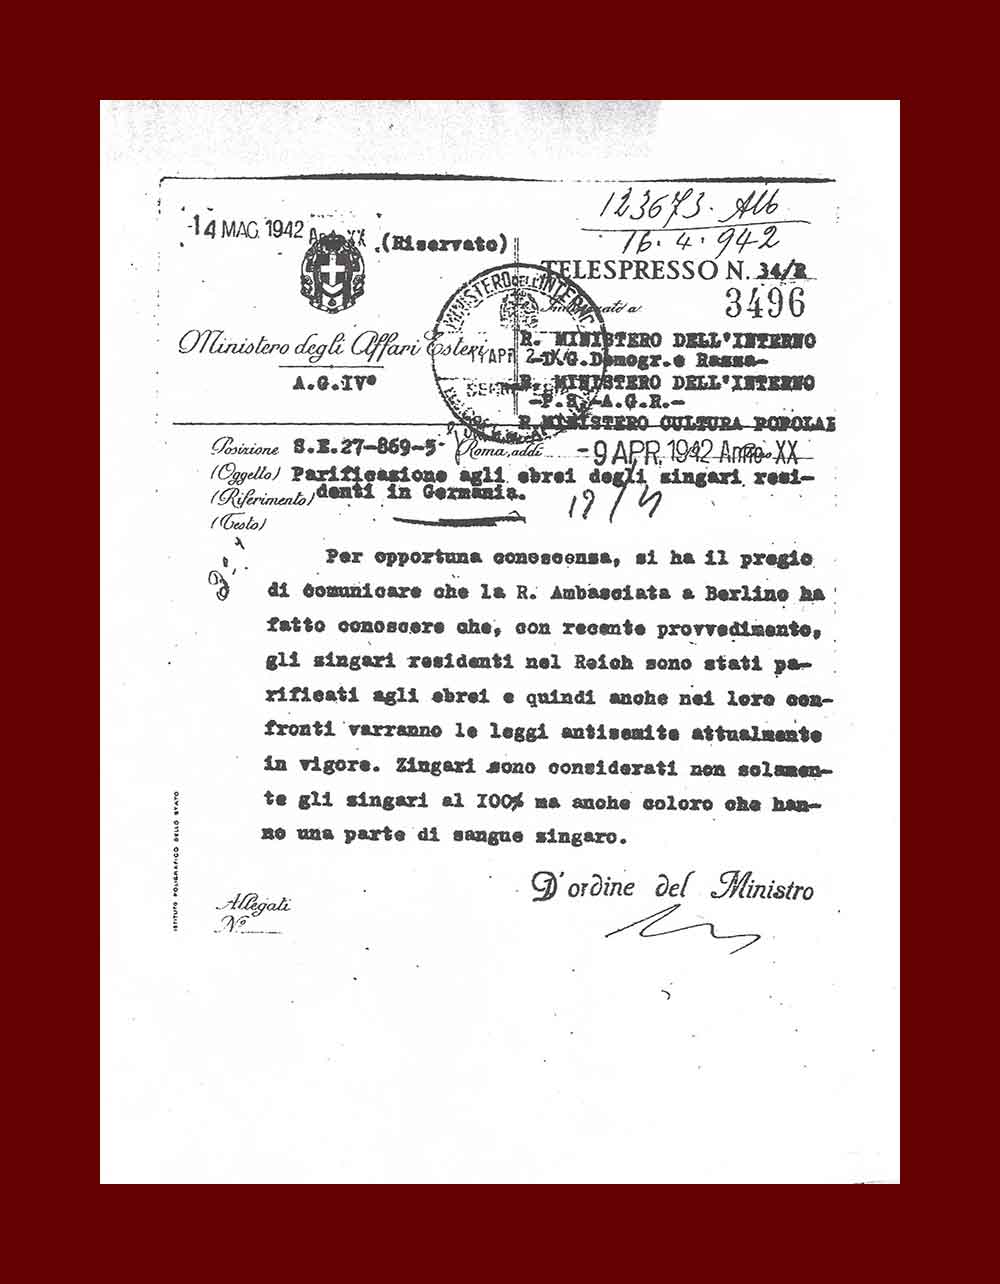 Telespresso dell'ambasciata italiana a Berlino del 9 aprile 1942